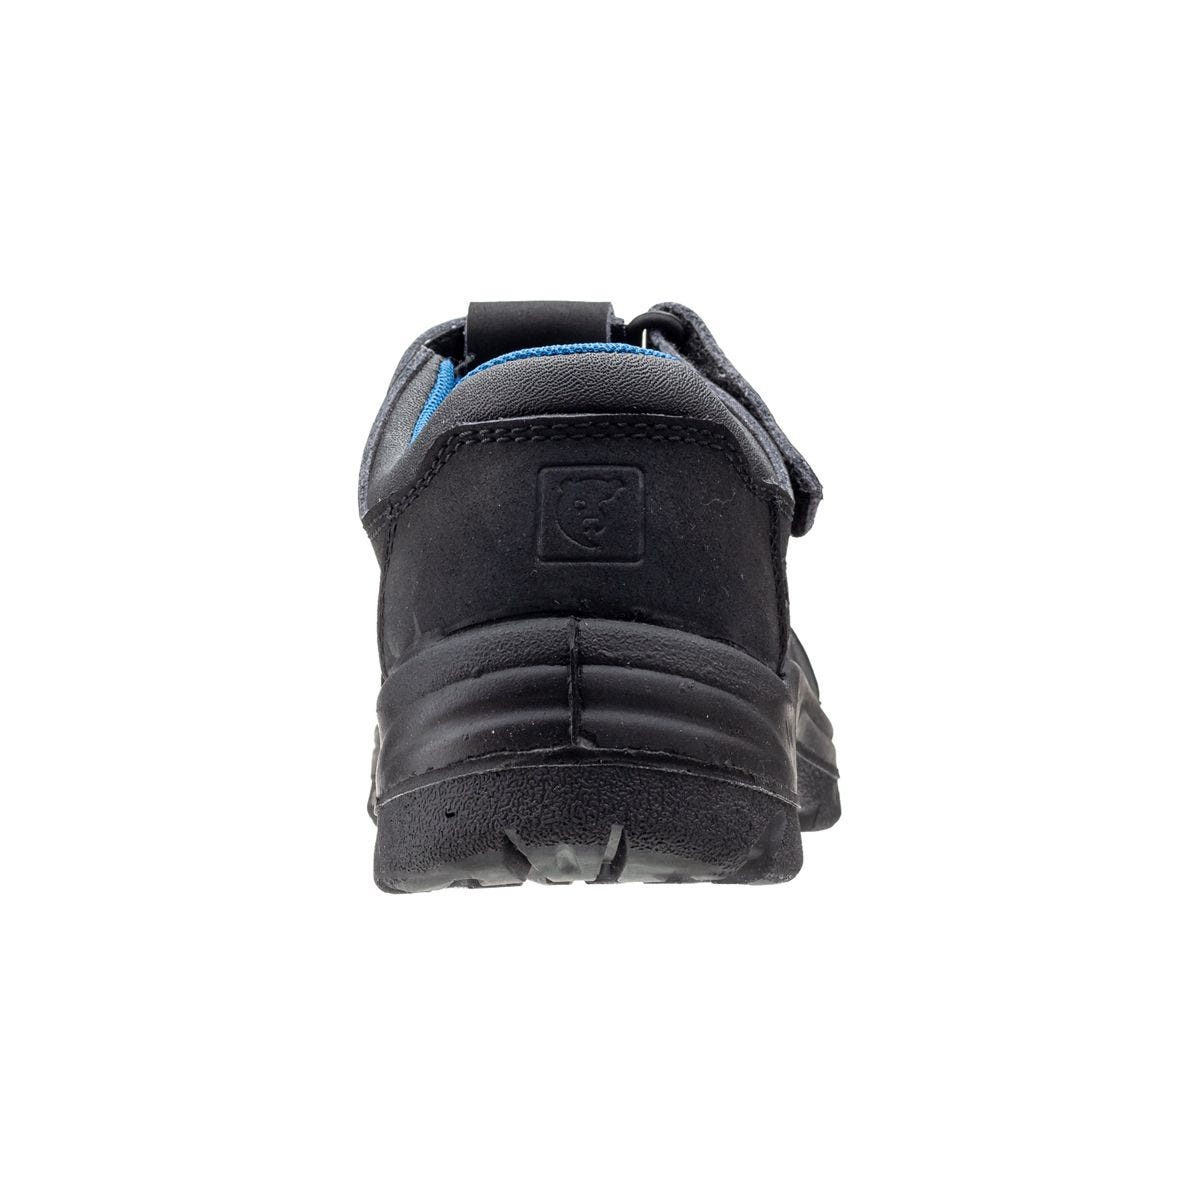 Sandales de travail basses Boni II Noir - Coverguard - Taille 36 2